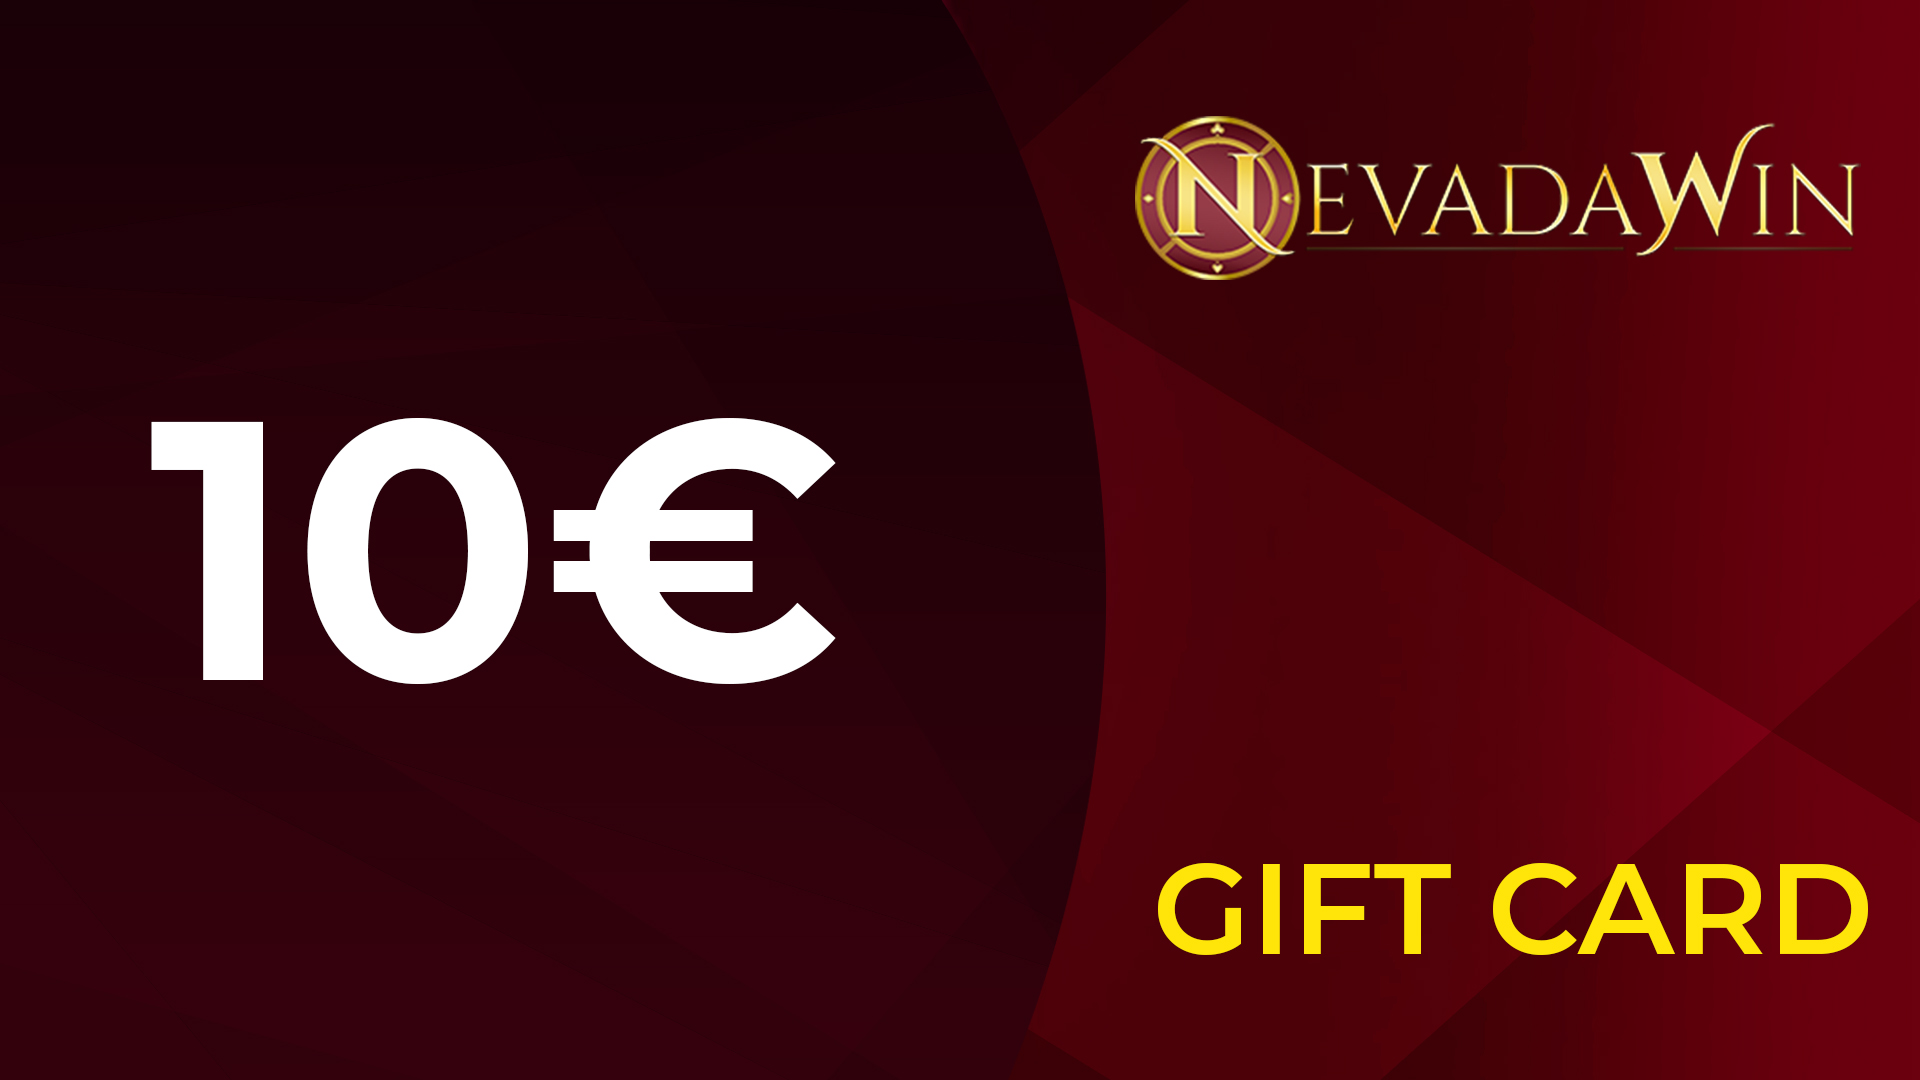 NevadaWin €10 Giftcard 10.99 usd